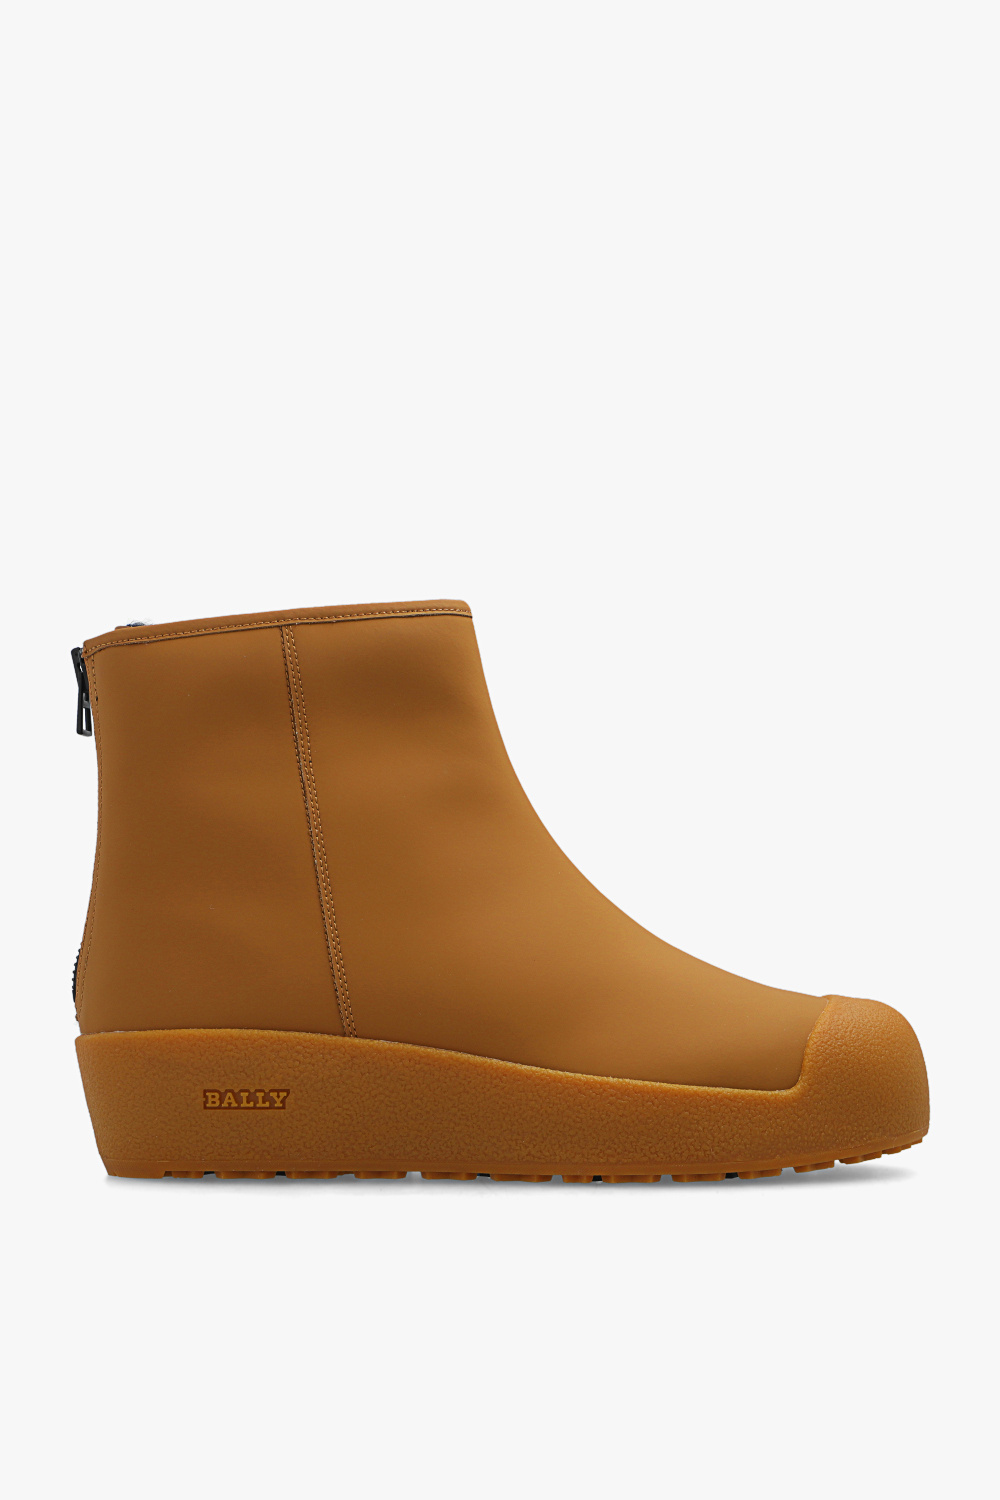 Bally ‘Bernina’ snow boots